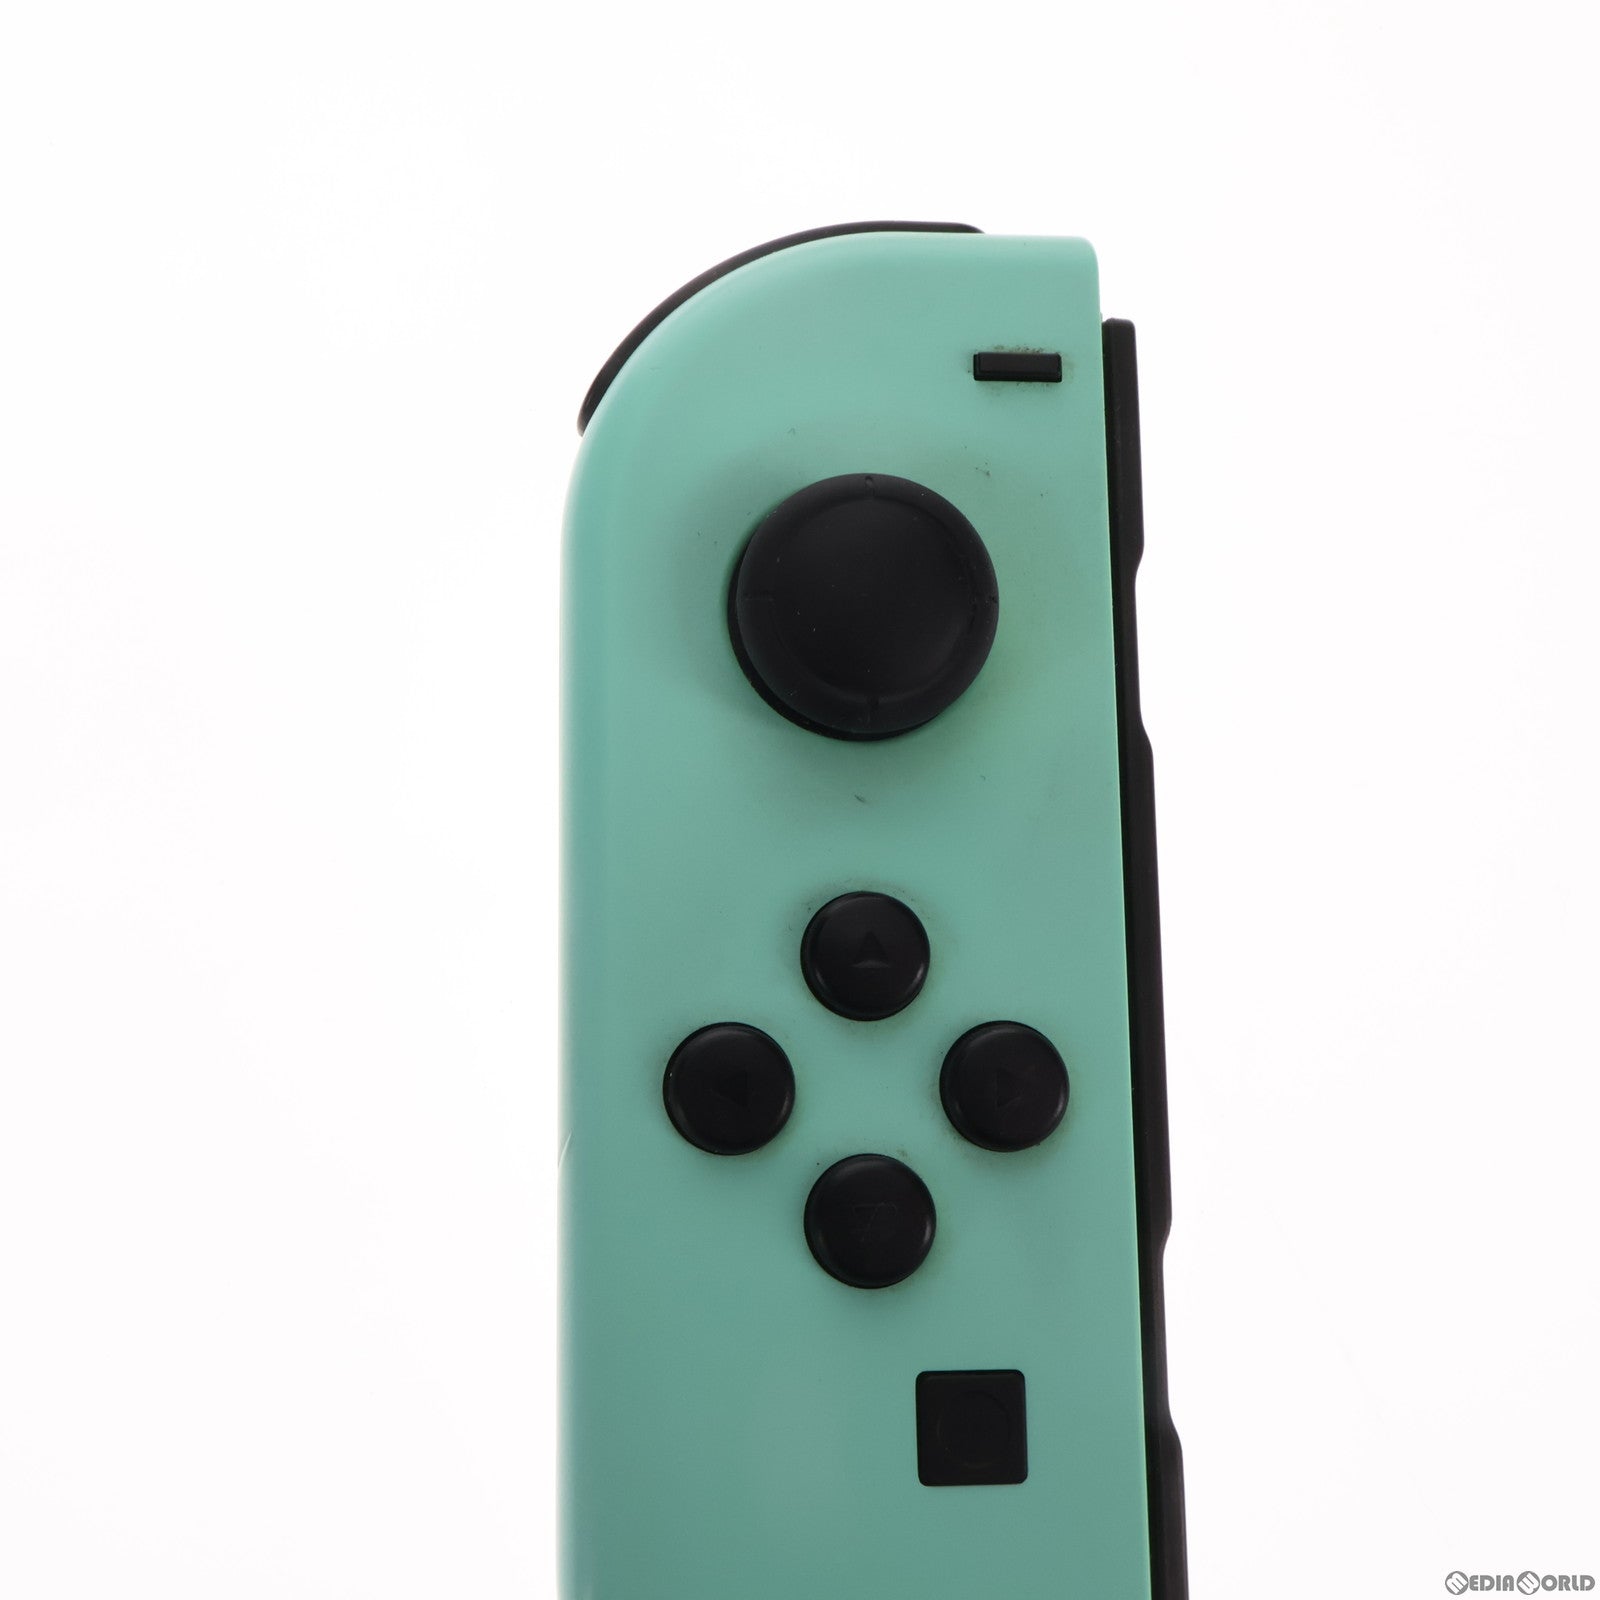 【中古即納】[本体][Switch](ソフト無し)Nintendo Switch(ニンテンドースイッチ) あつまれ どうぶつの森セット(HAD-S-KEAGC)(20200320)